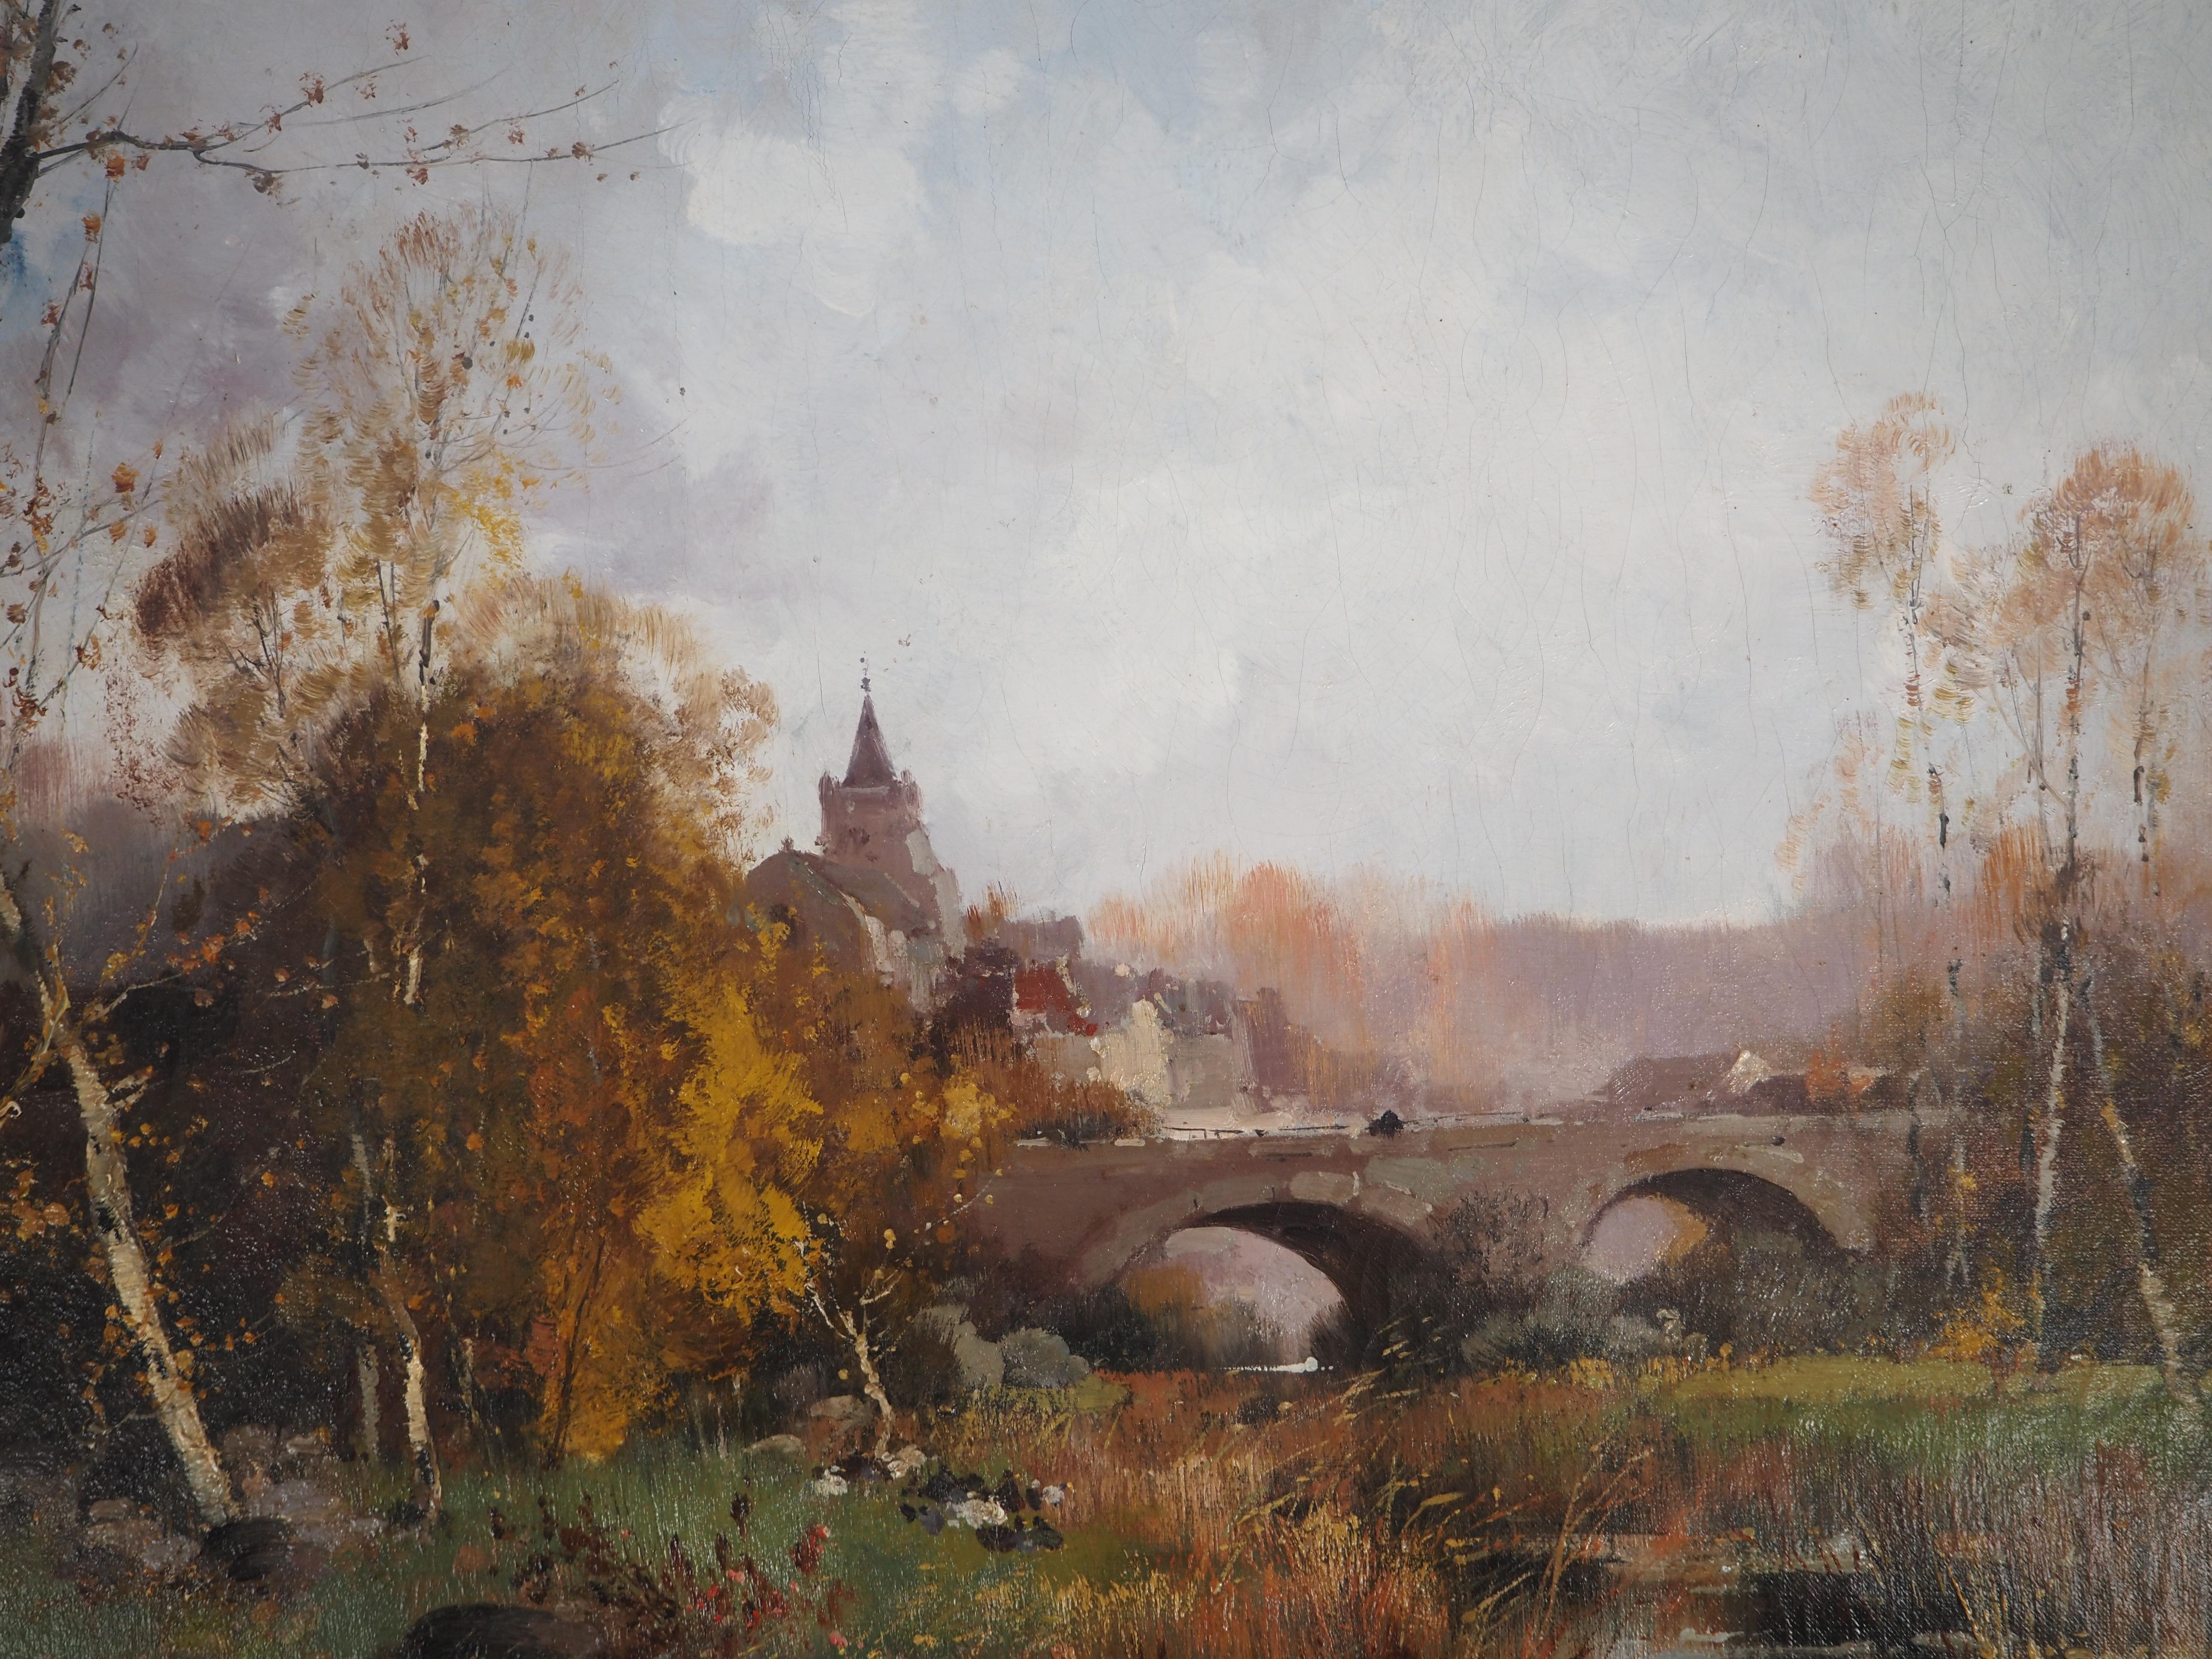 Französische Normandie, Brücke in der Nähe eines Dorfes – Originalgemälde auf Leinwand – signiert (Post-Impressionismus), Painting, von Eugene Galien-Laloue